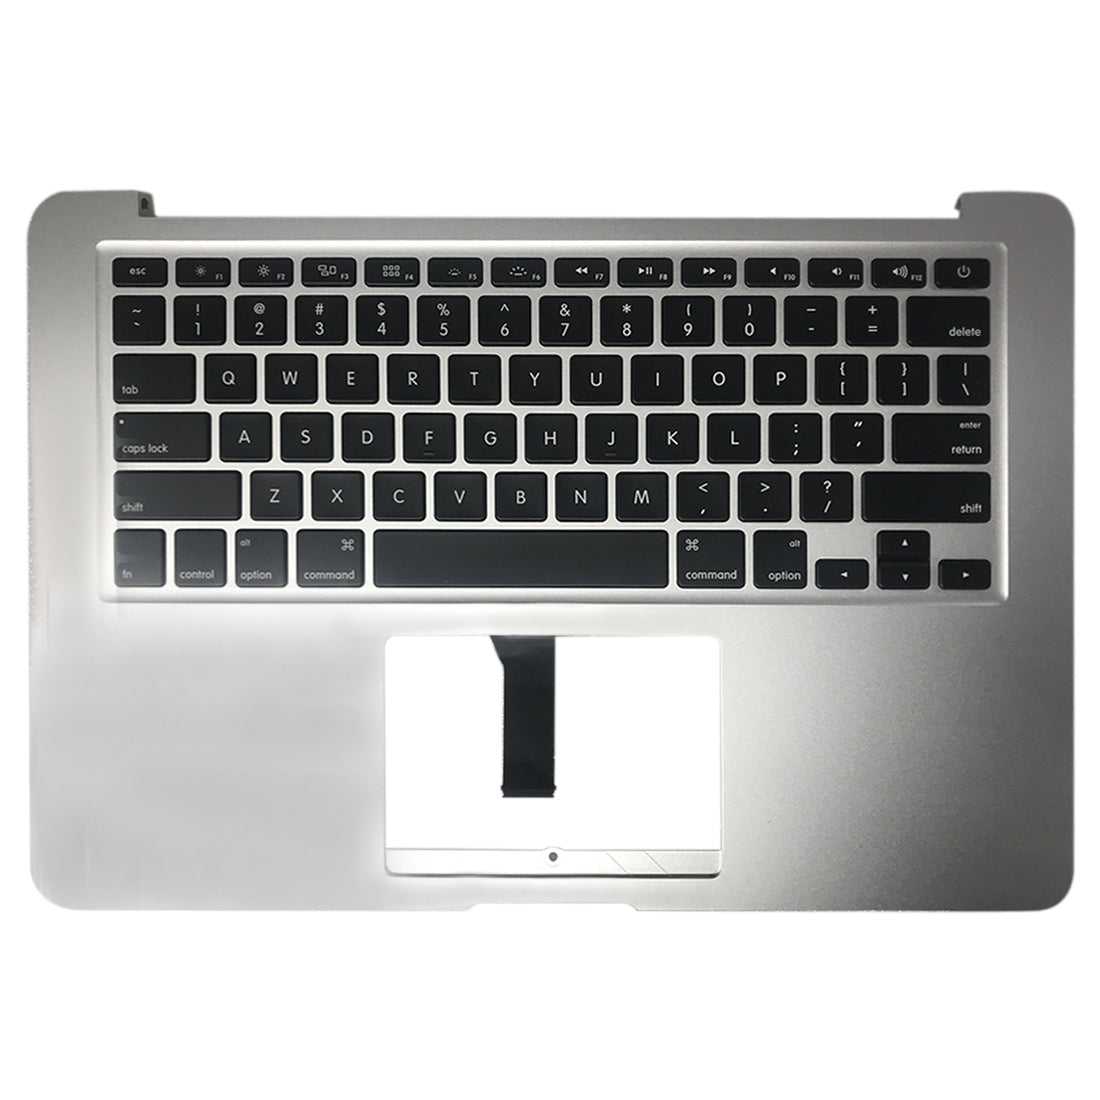 Teclado Versión EEUU sin ñ Apple MacBook A1466 2013 2015